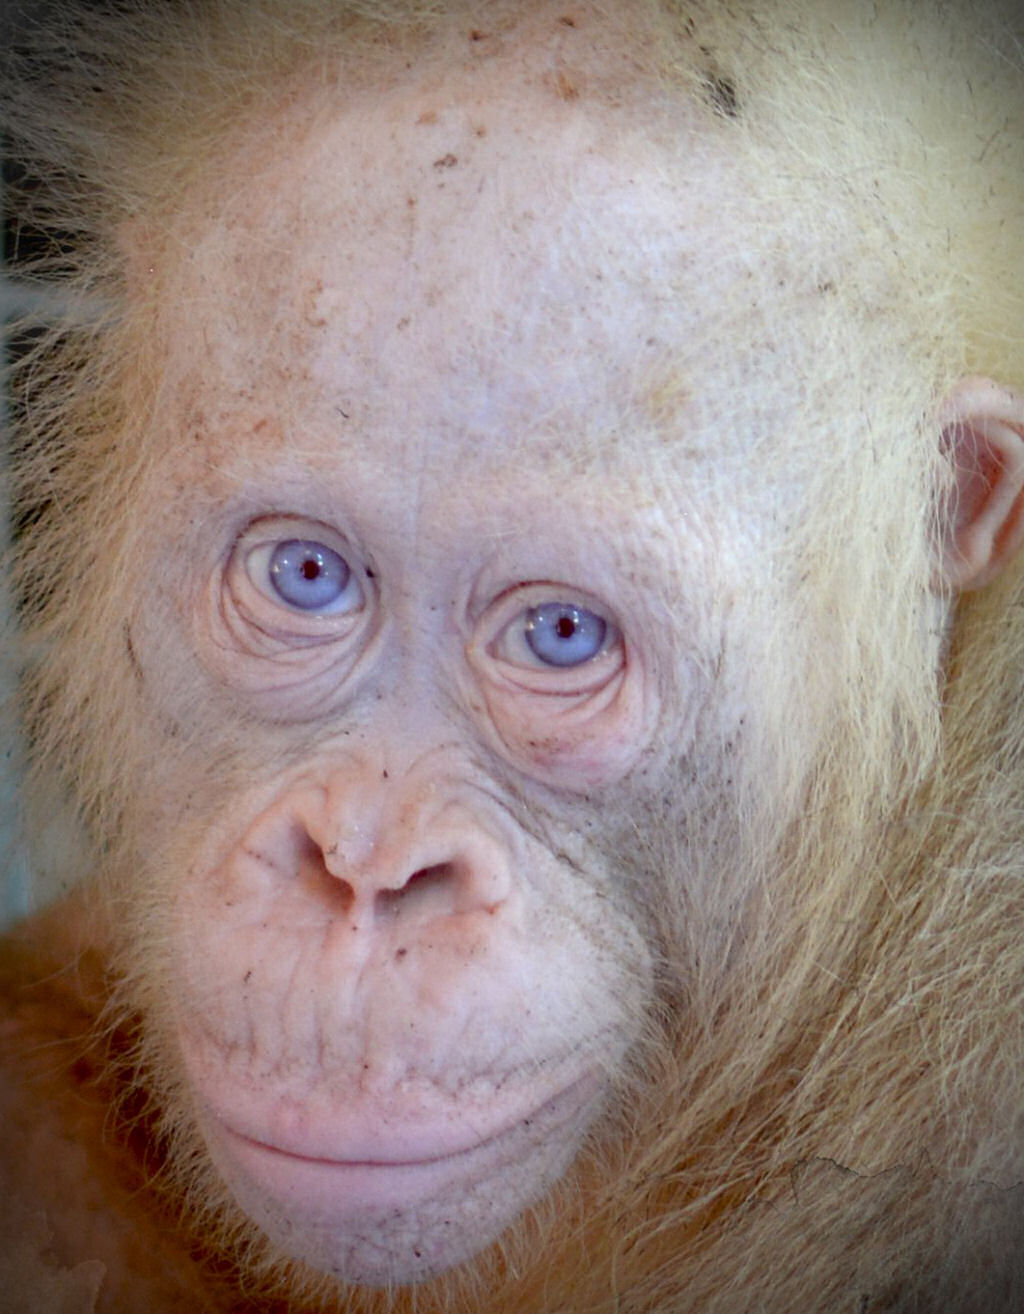 Os estranhos chimpanzs com olhos humanos